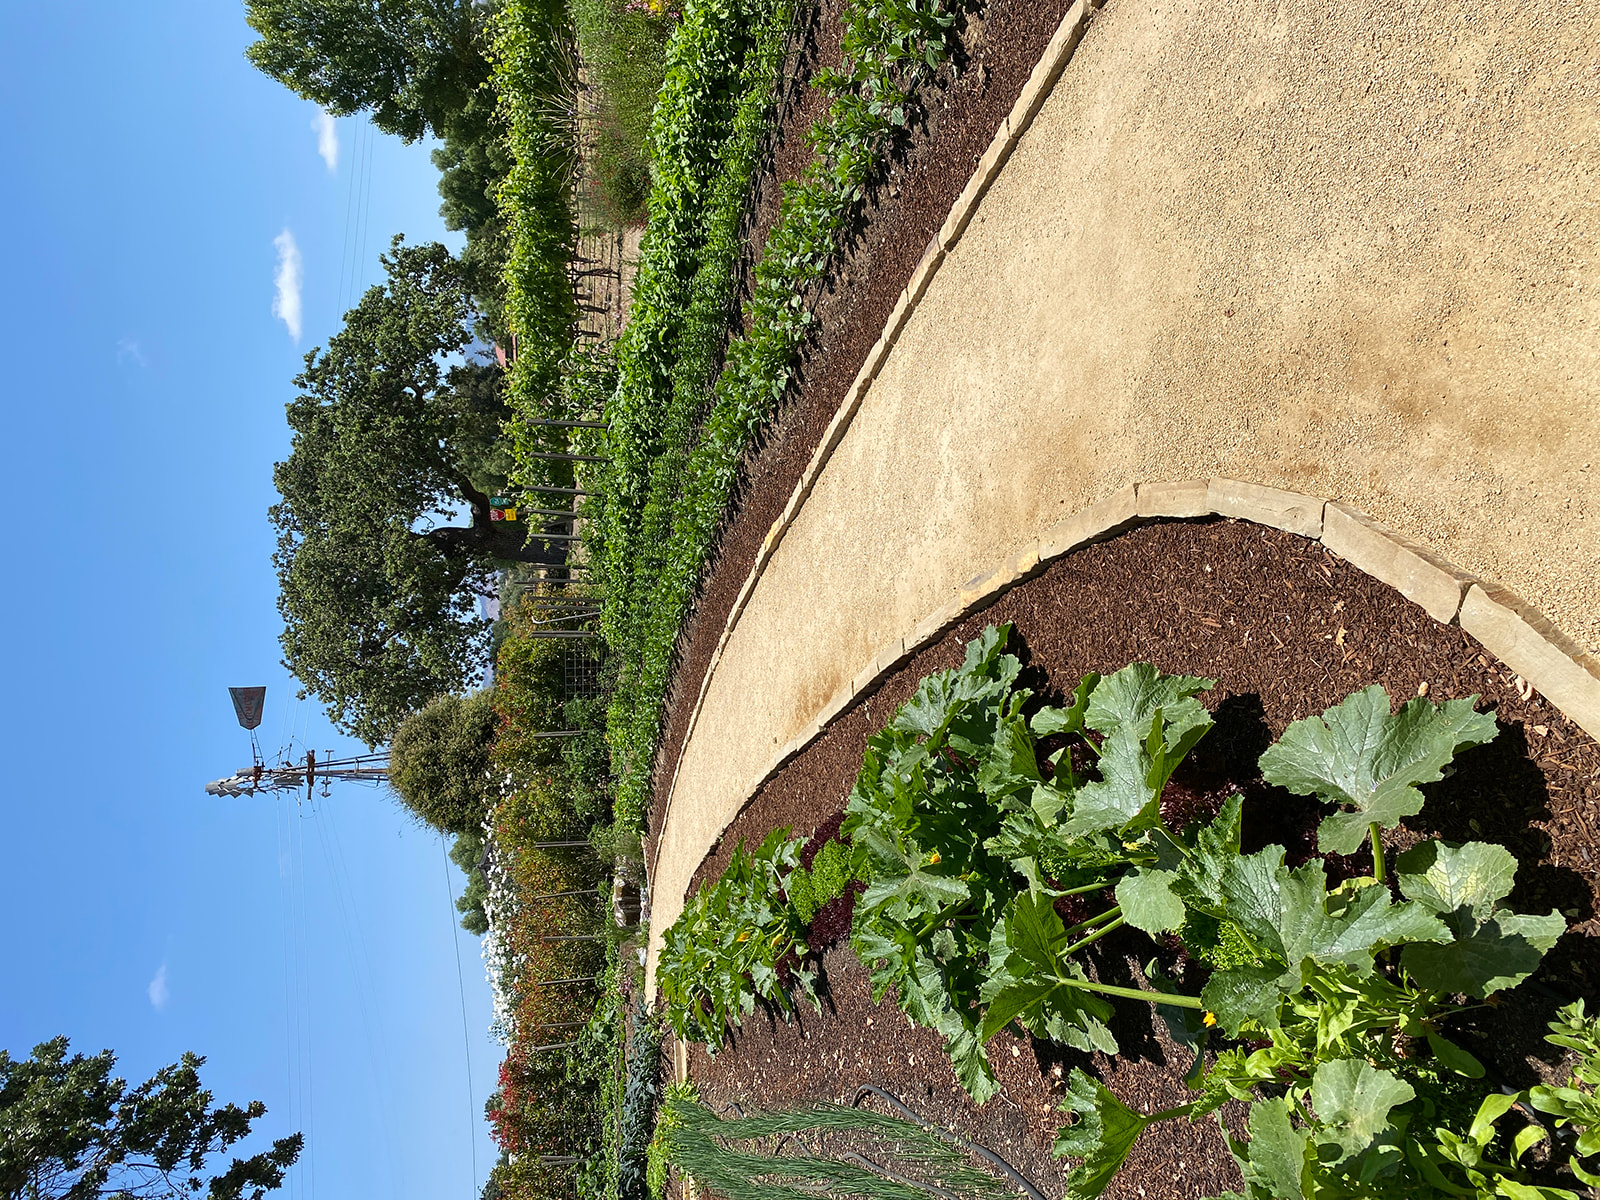 Walking path through the garden at Roblar winery & vineyard